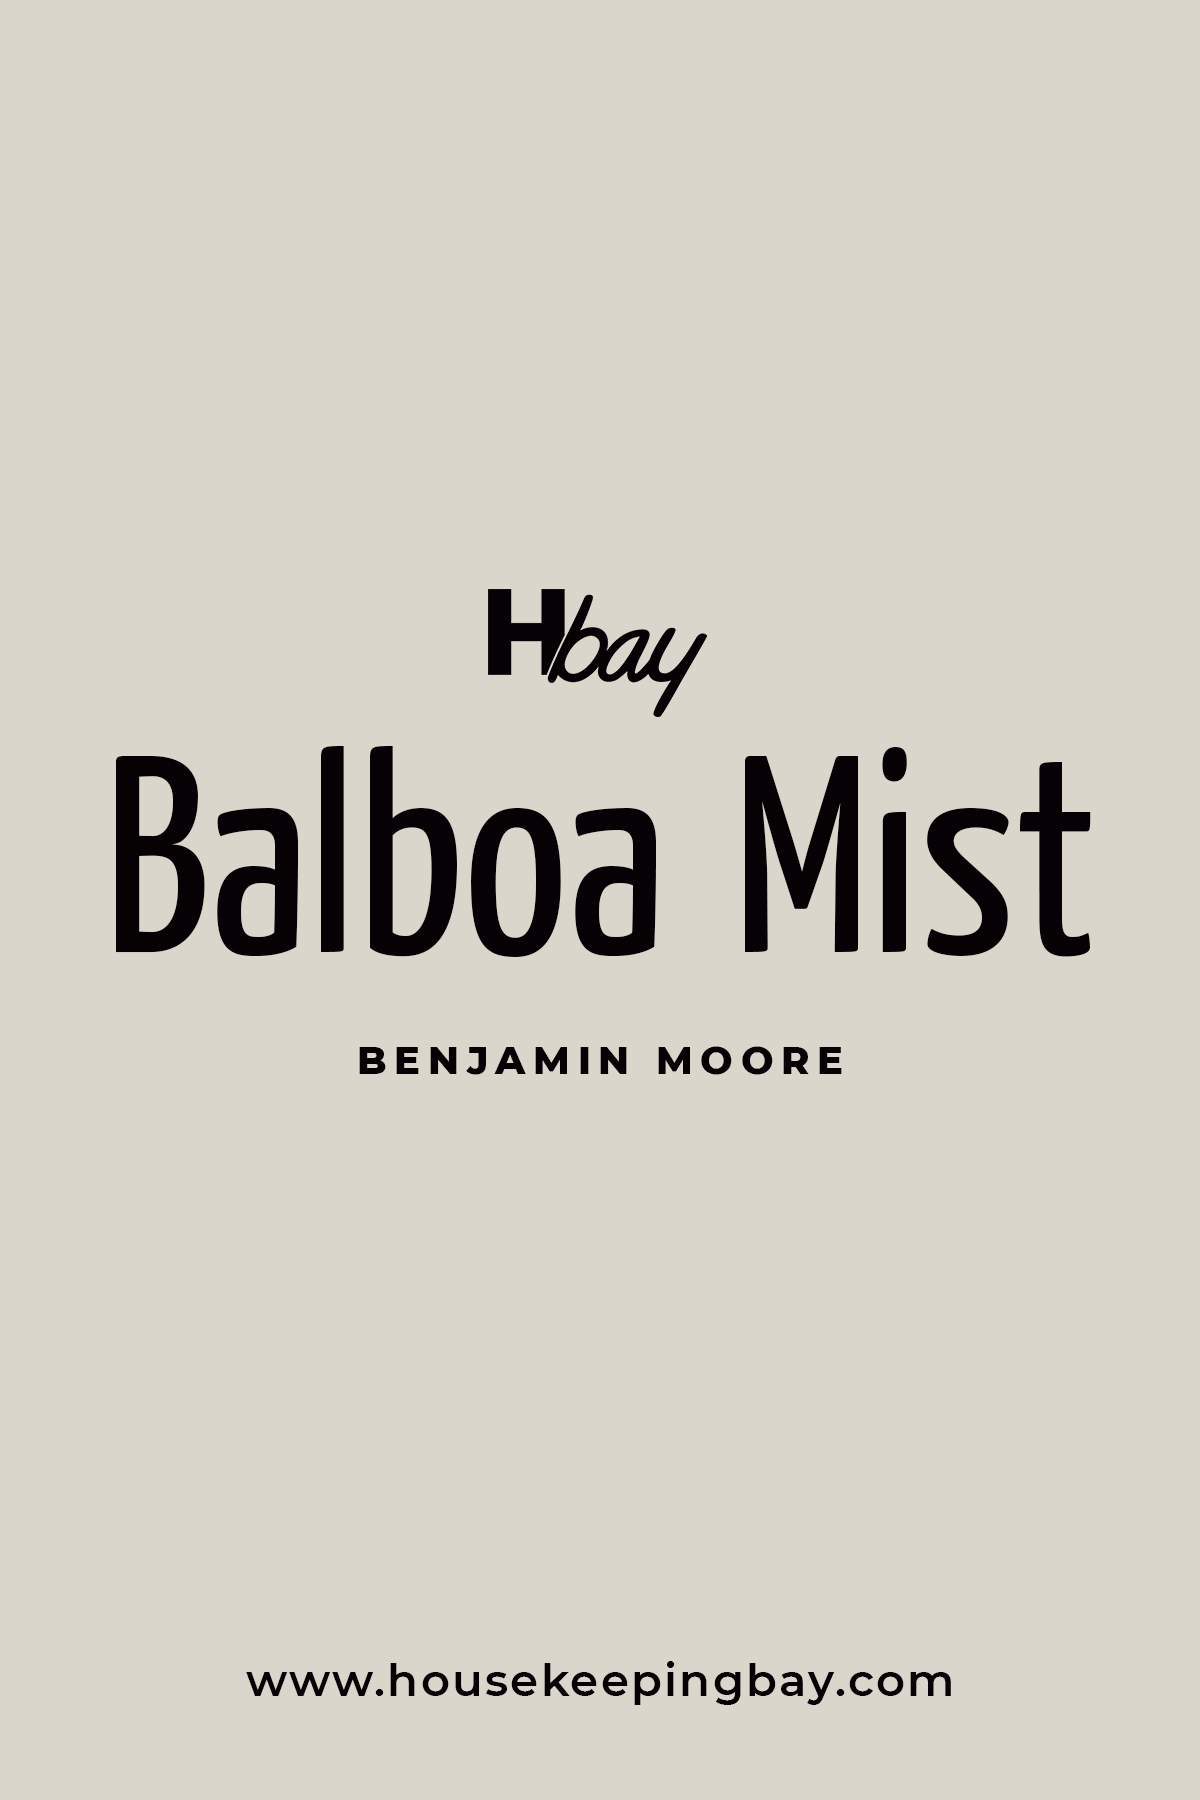 Balboa Mist